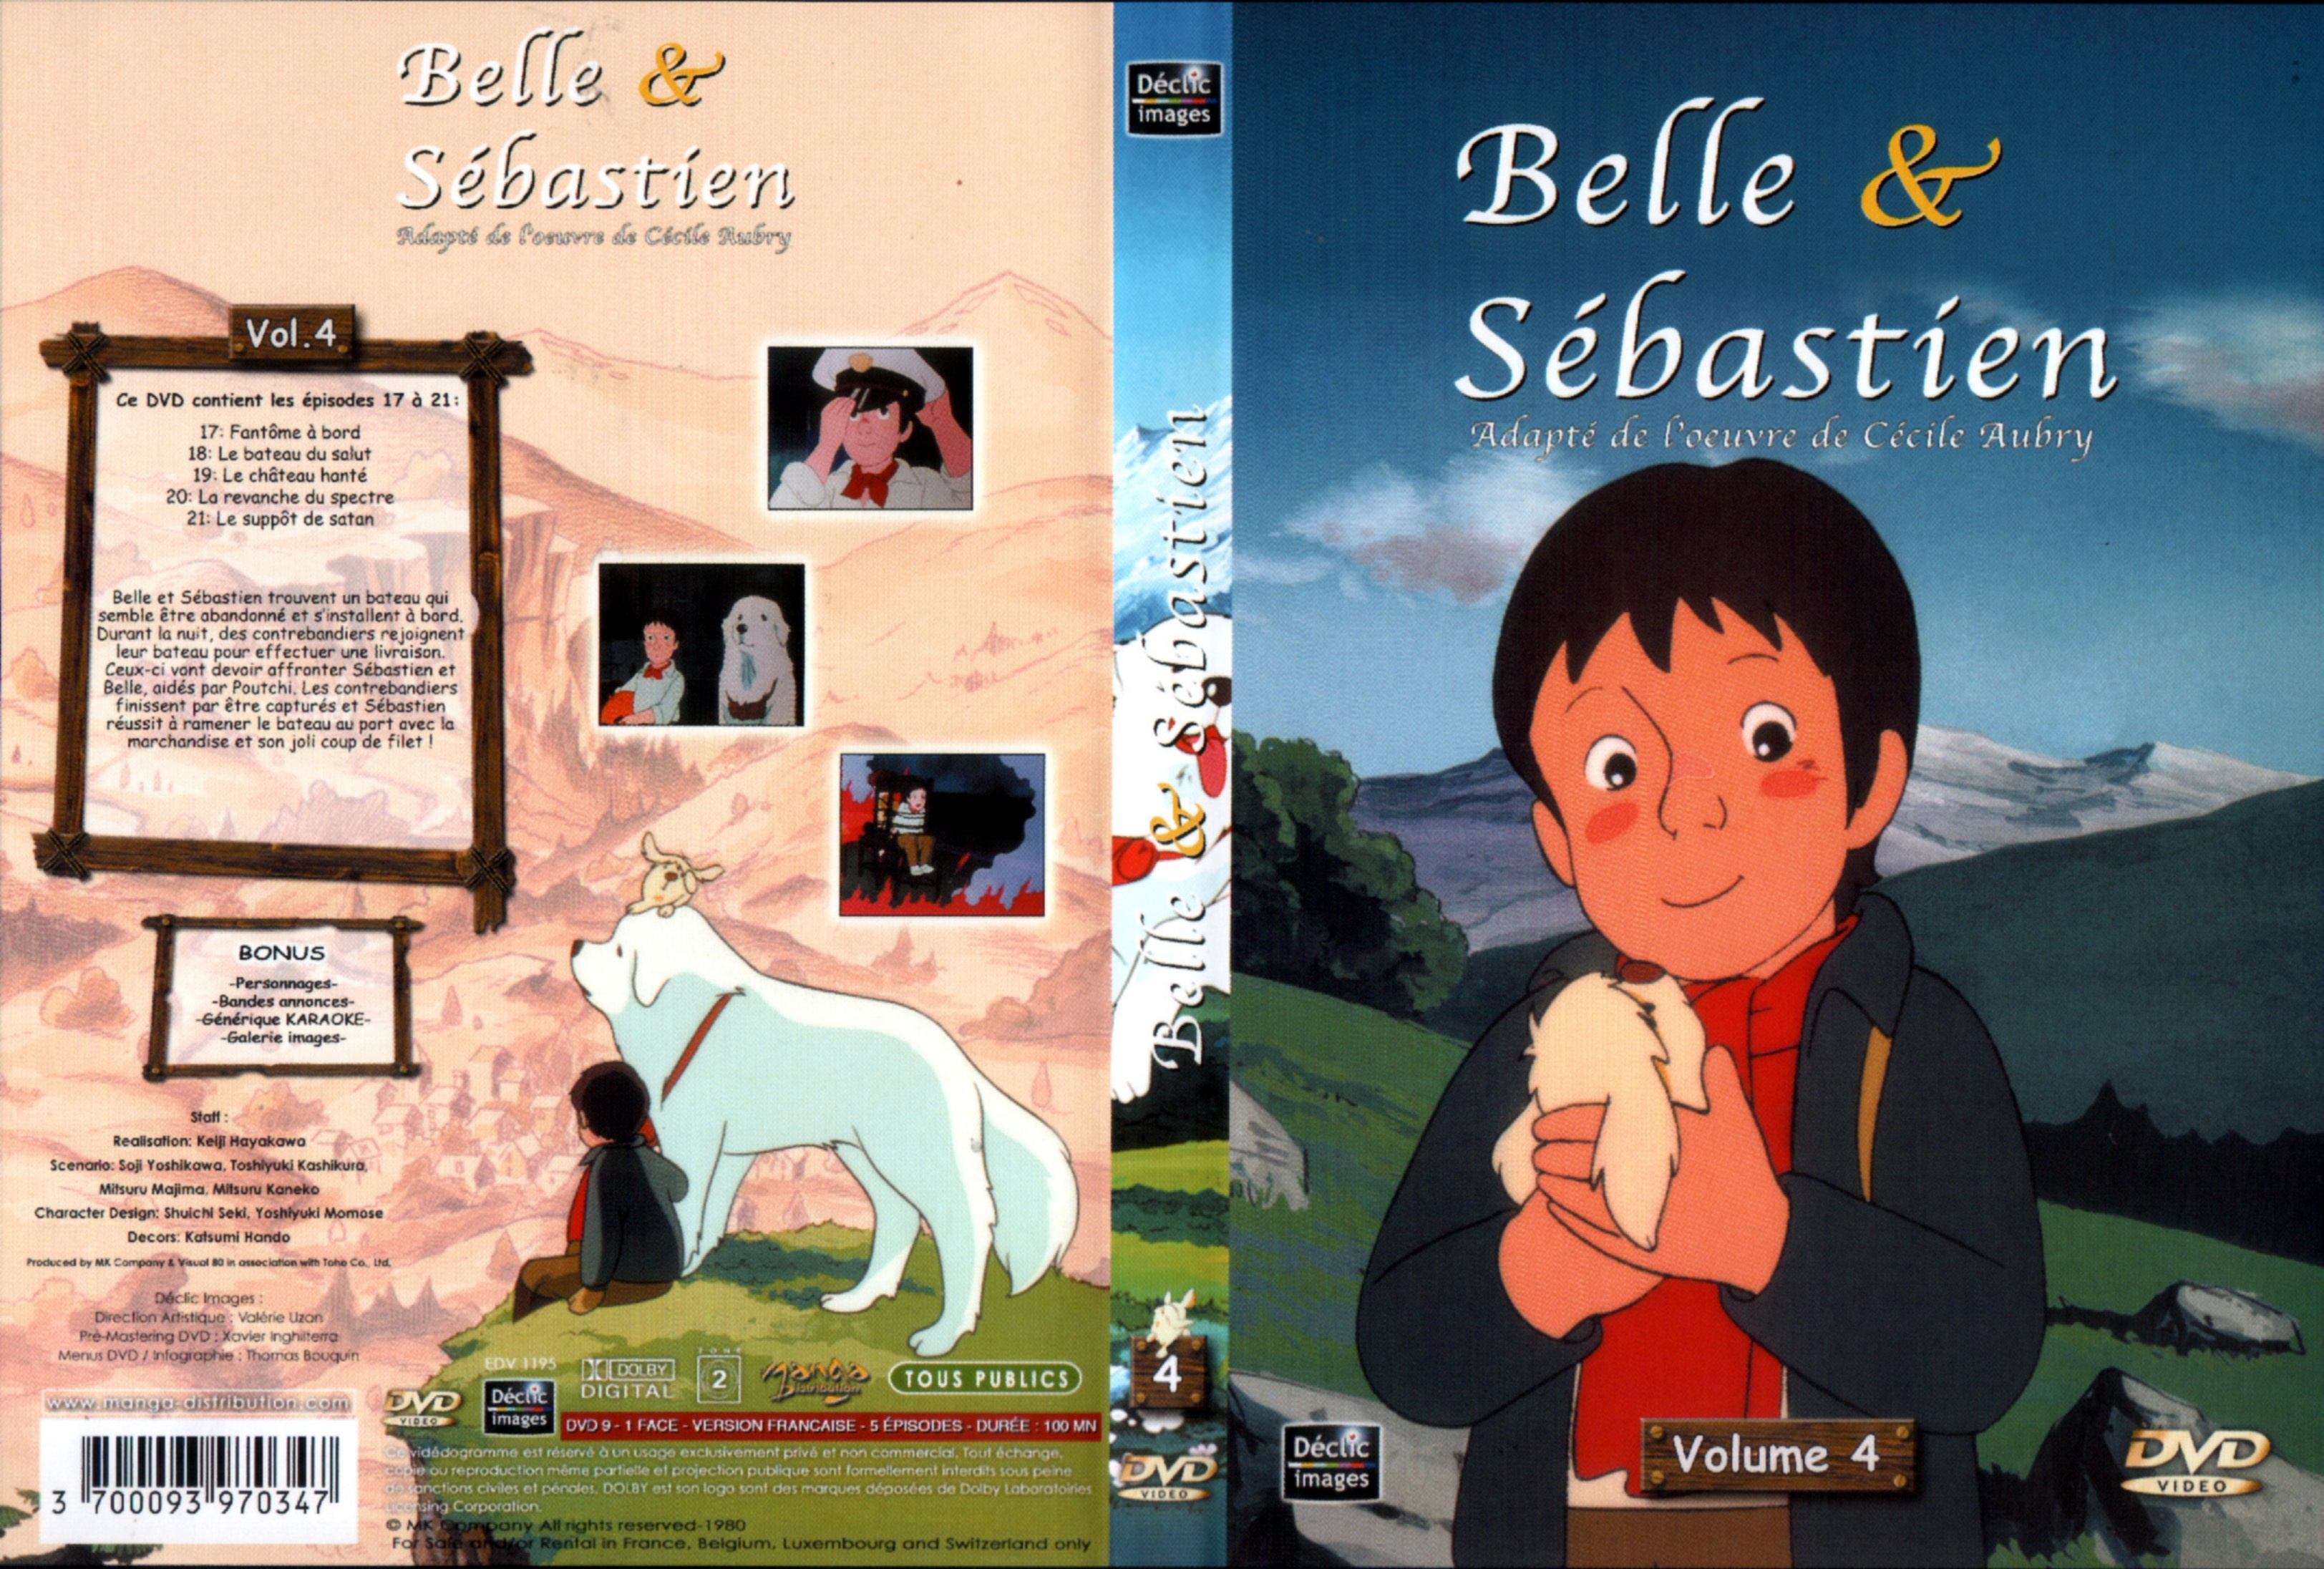 Jaquette DVD Belle et Sebastien DVD 04